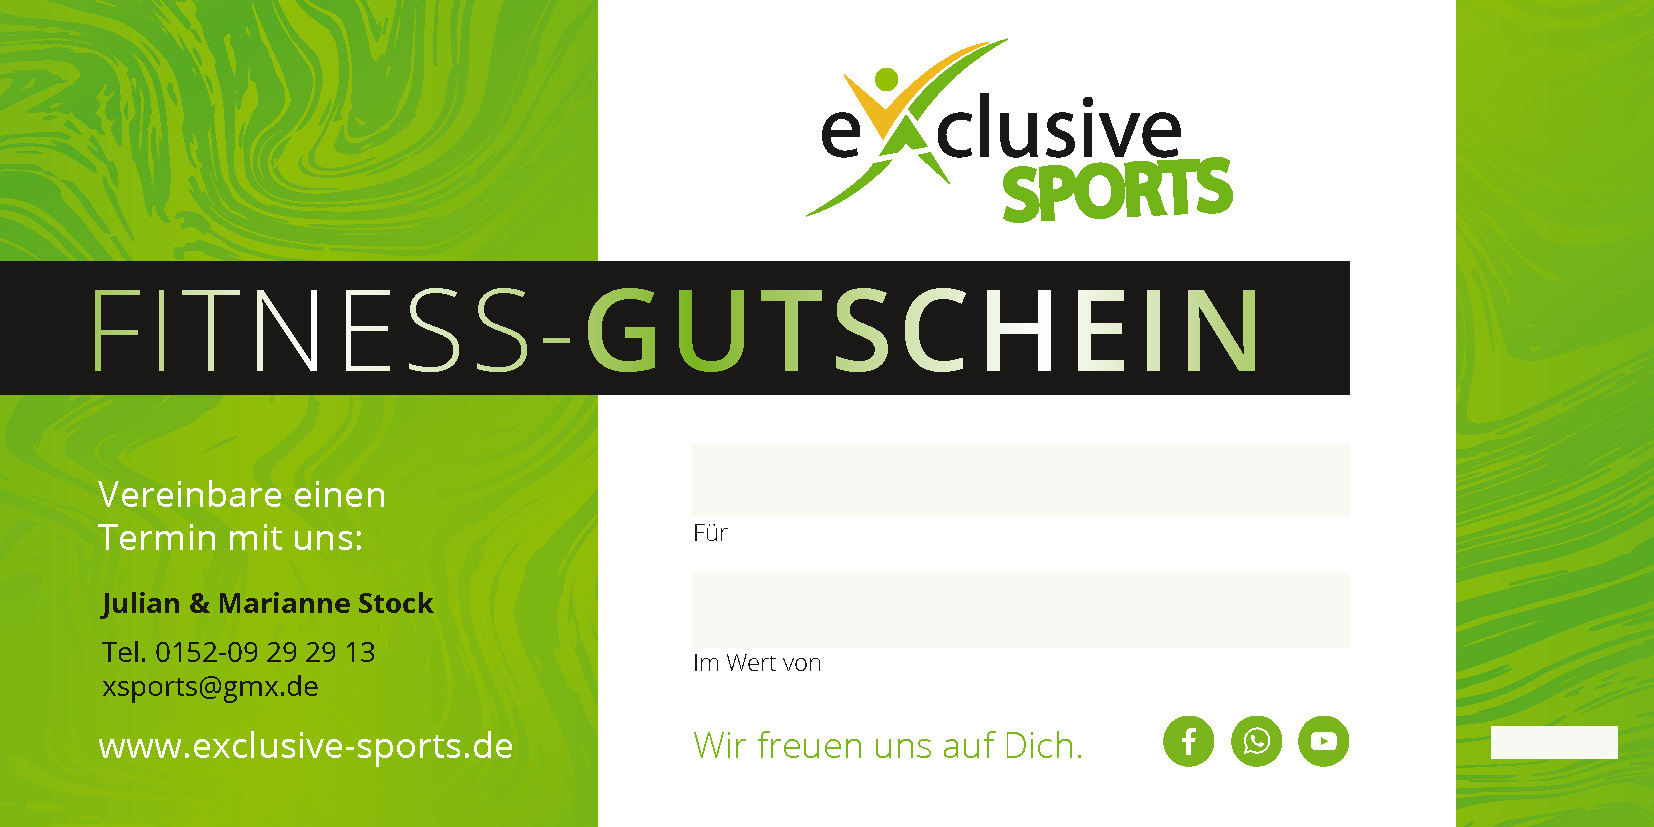 FitnessGutschein_exclusive Sports